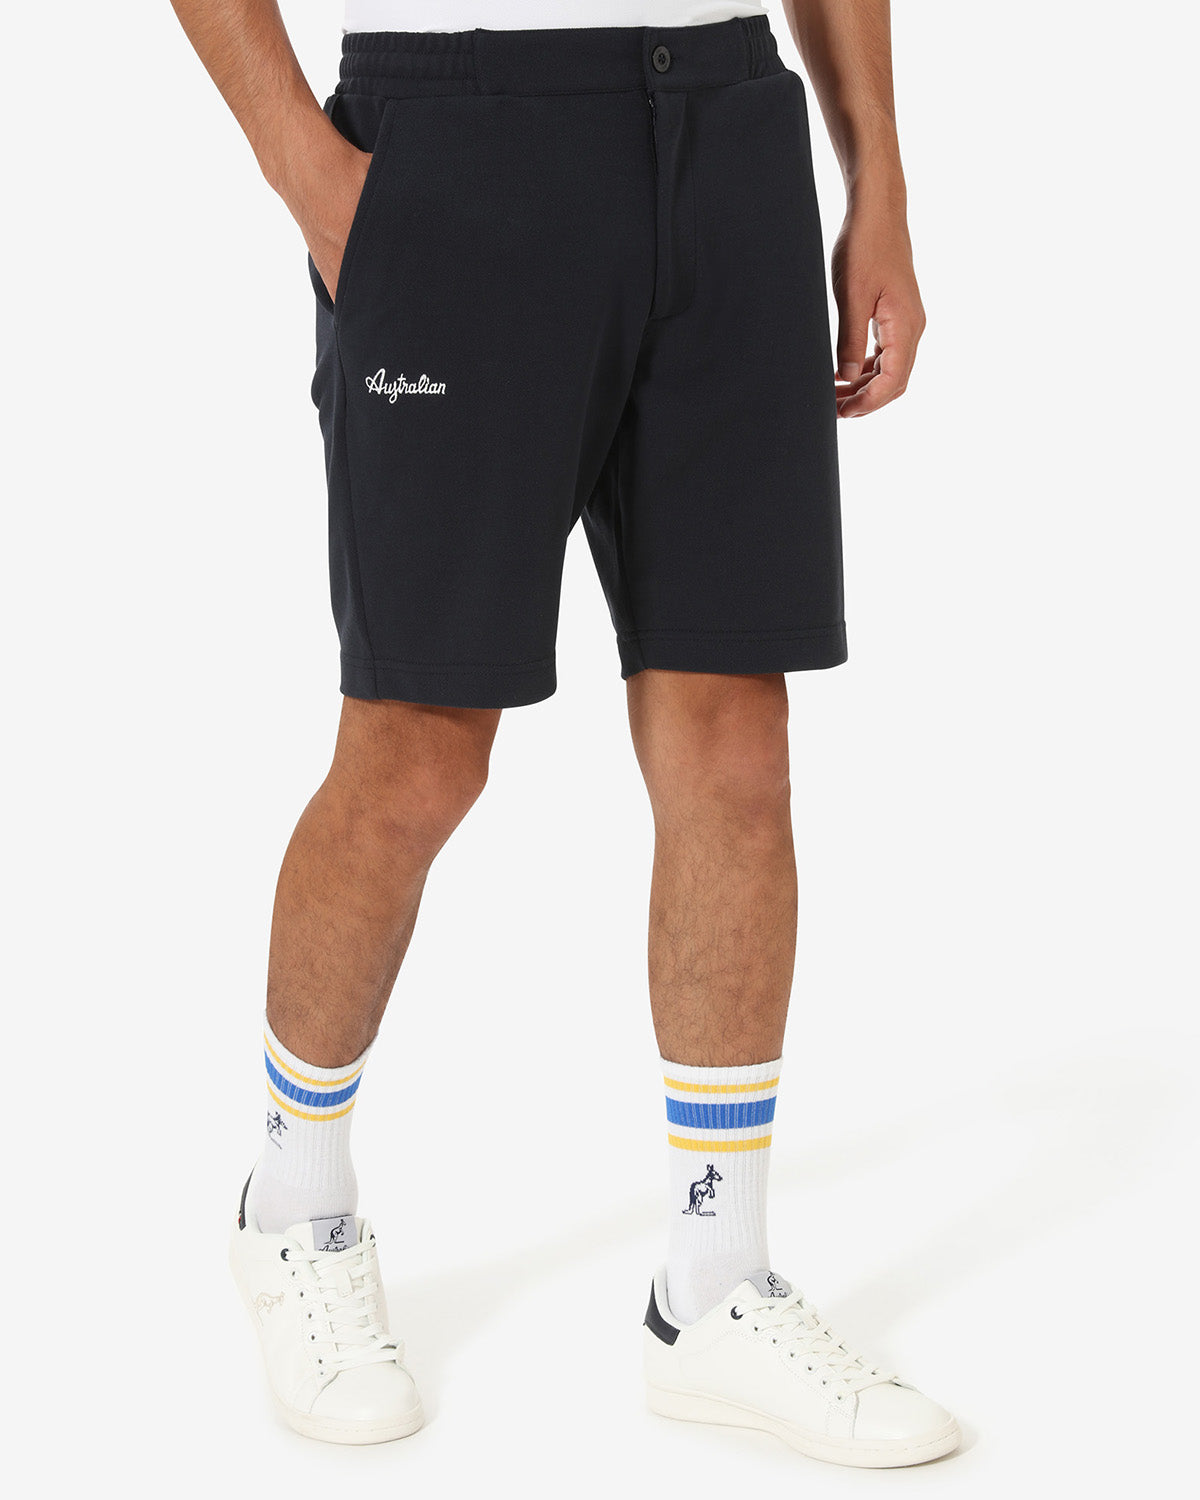 Club Short: Australian Sportswear